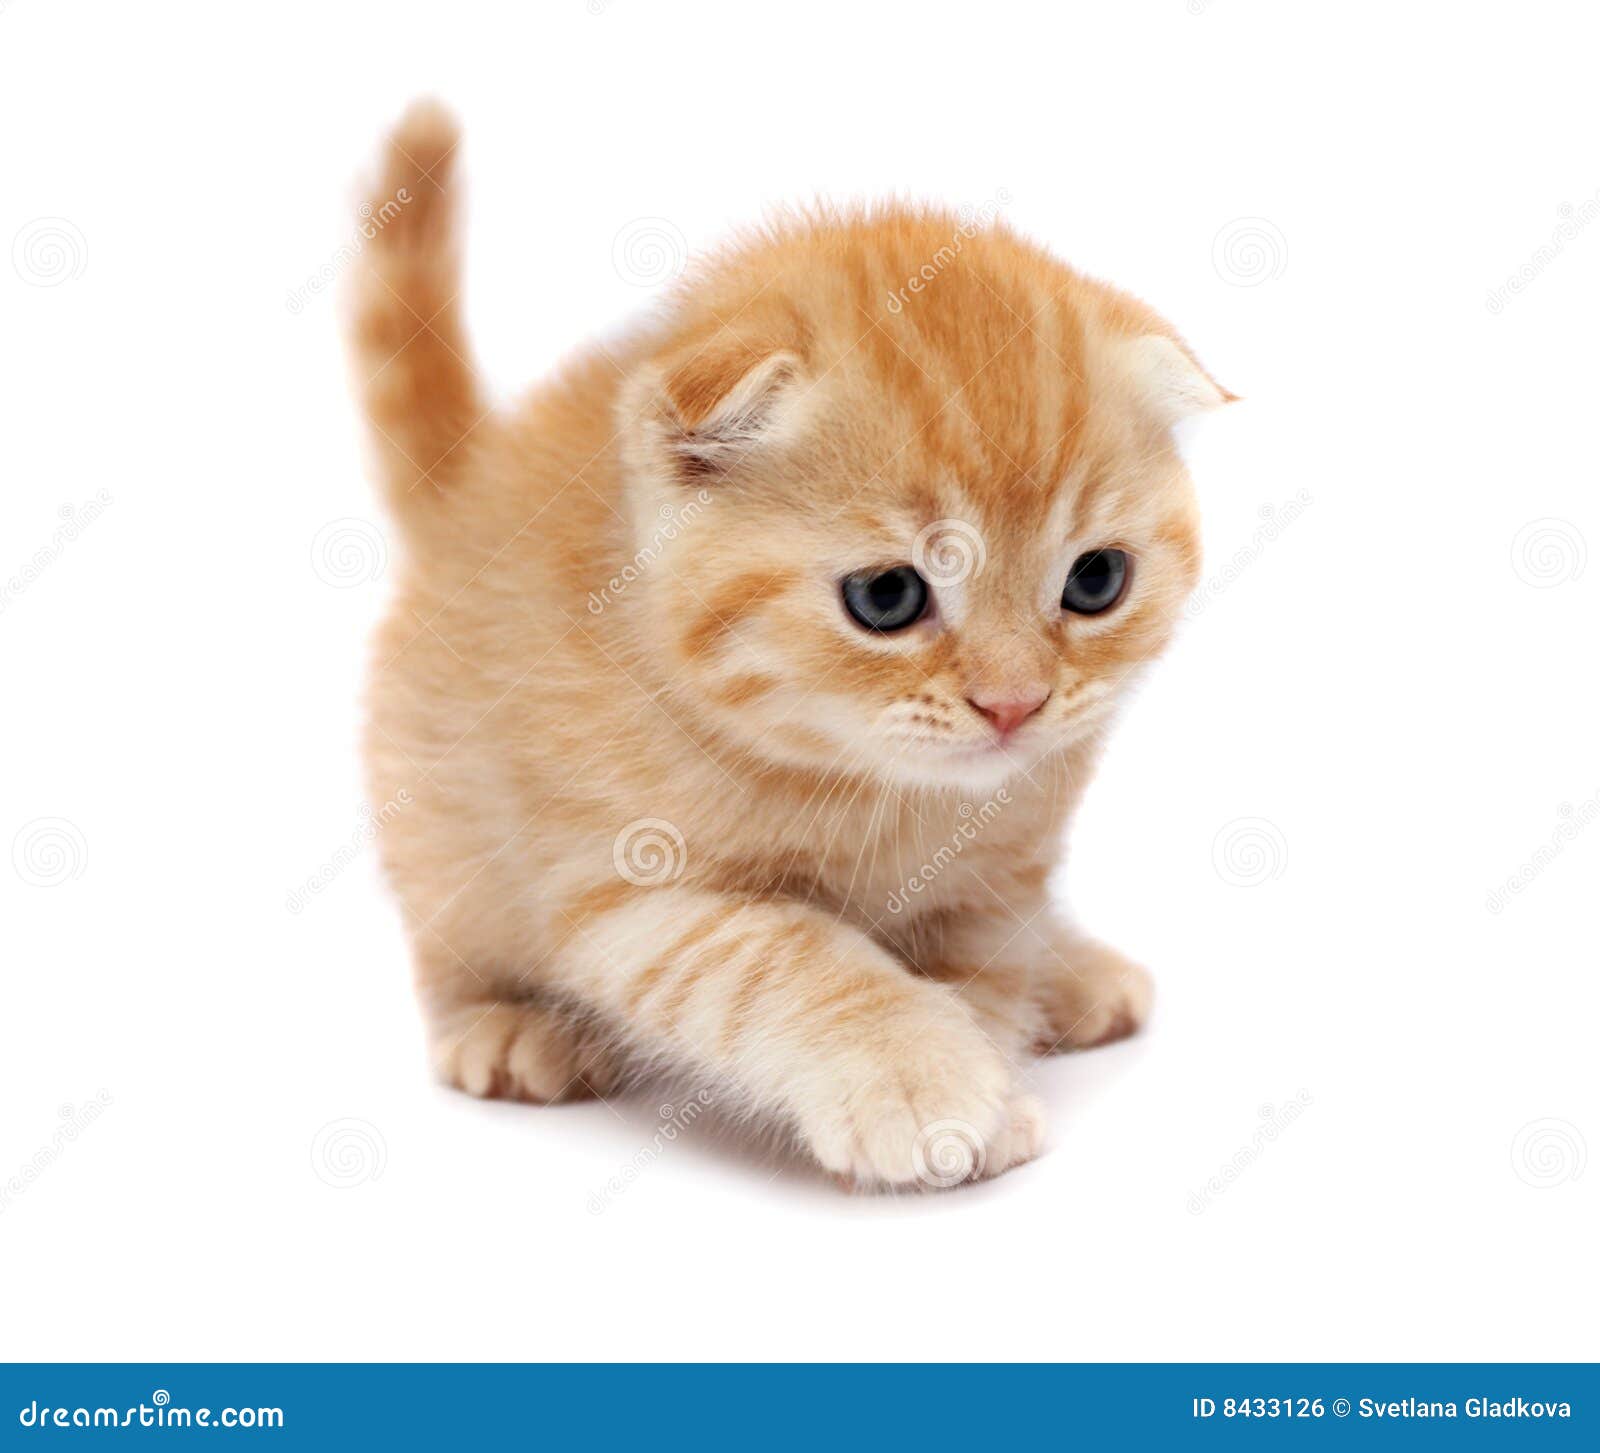 Scottish Fold Cats stock photo. Image of orange, beautiful ...